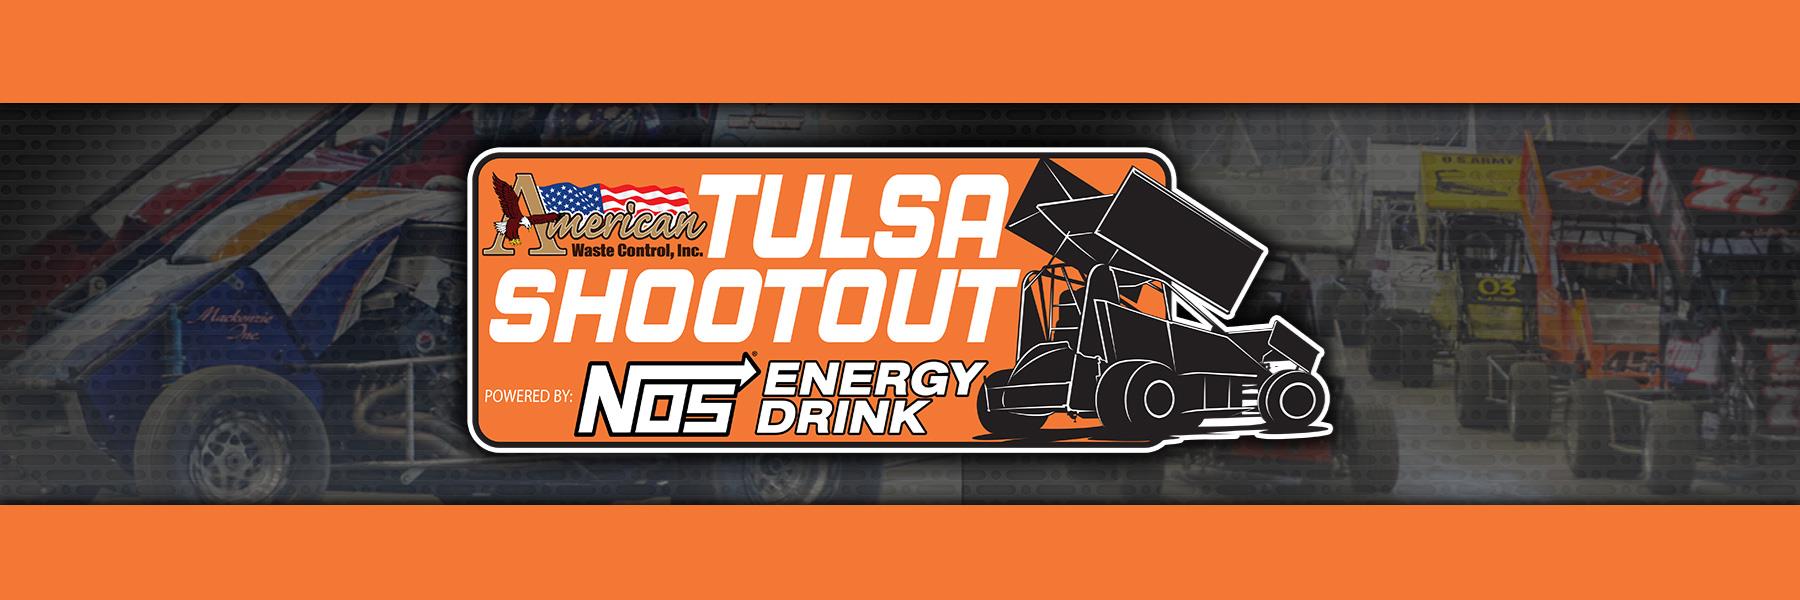 Tulsa Shootout